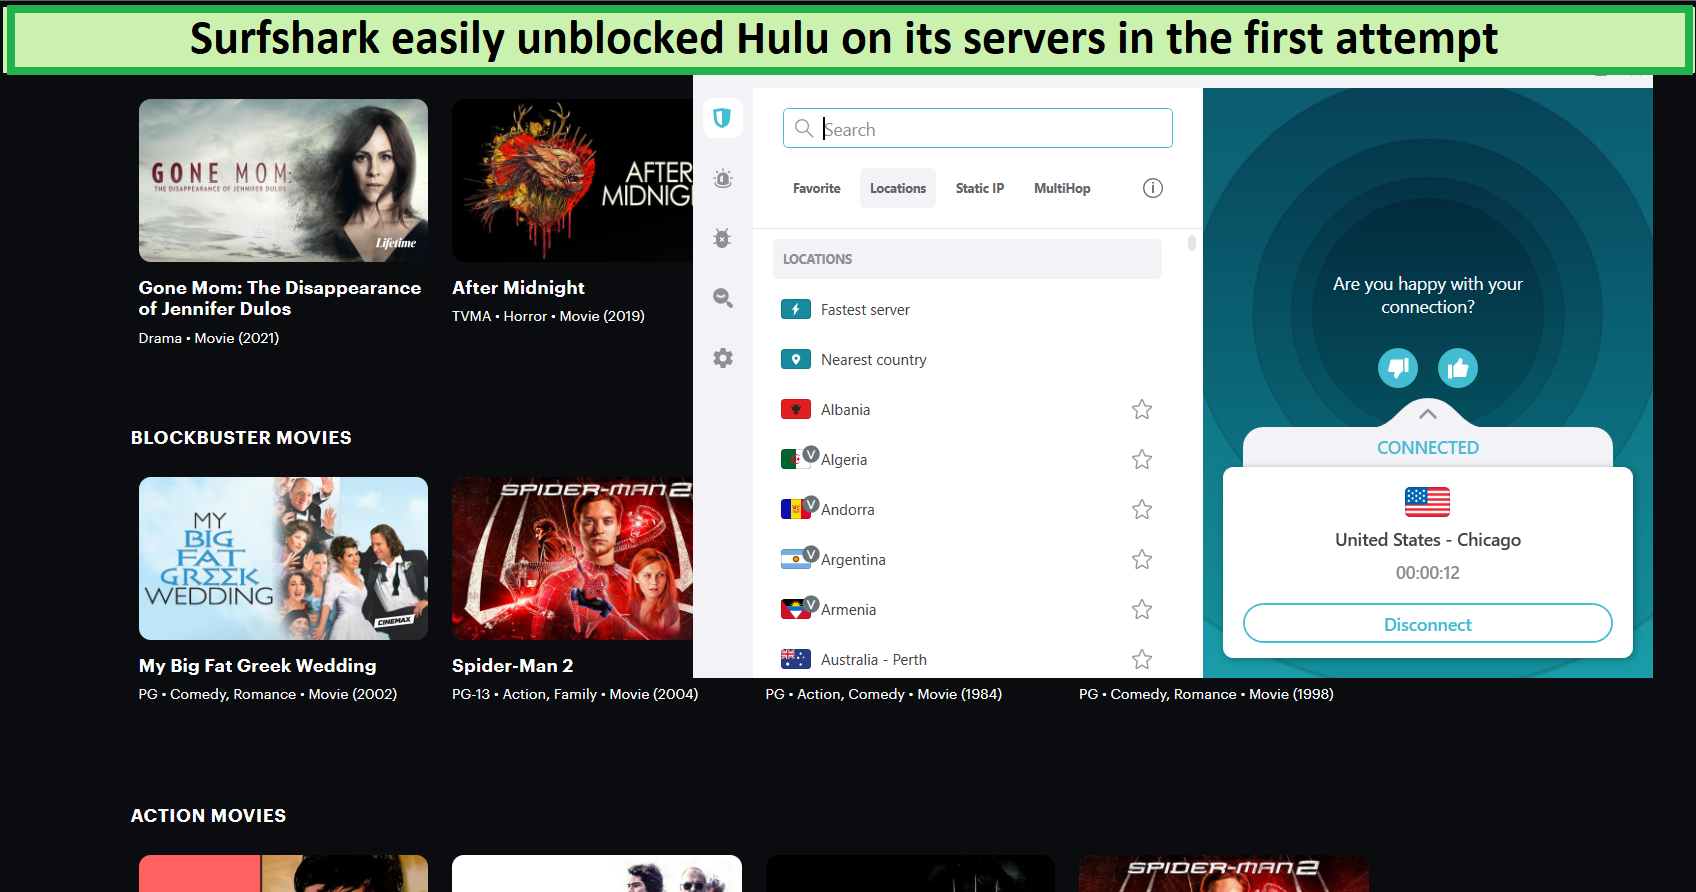  Maak gemakkelijk Hulu ontgrendelen op Android met Surfshark. 